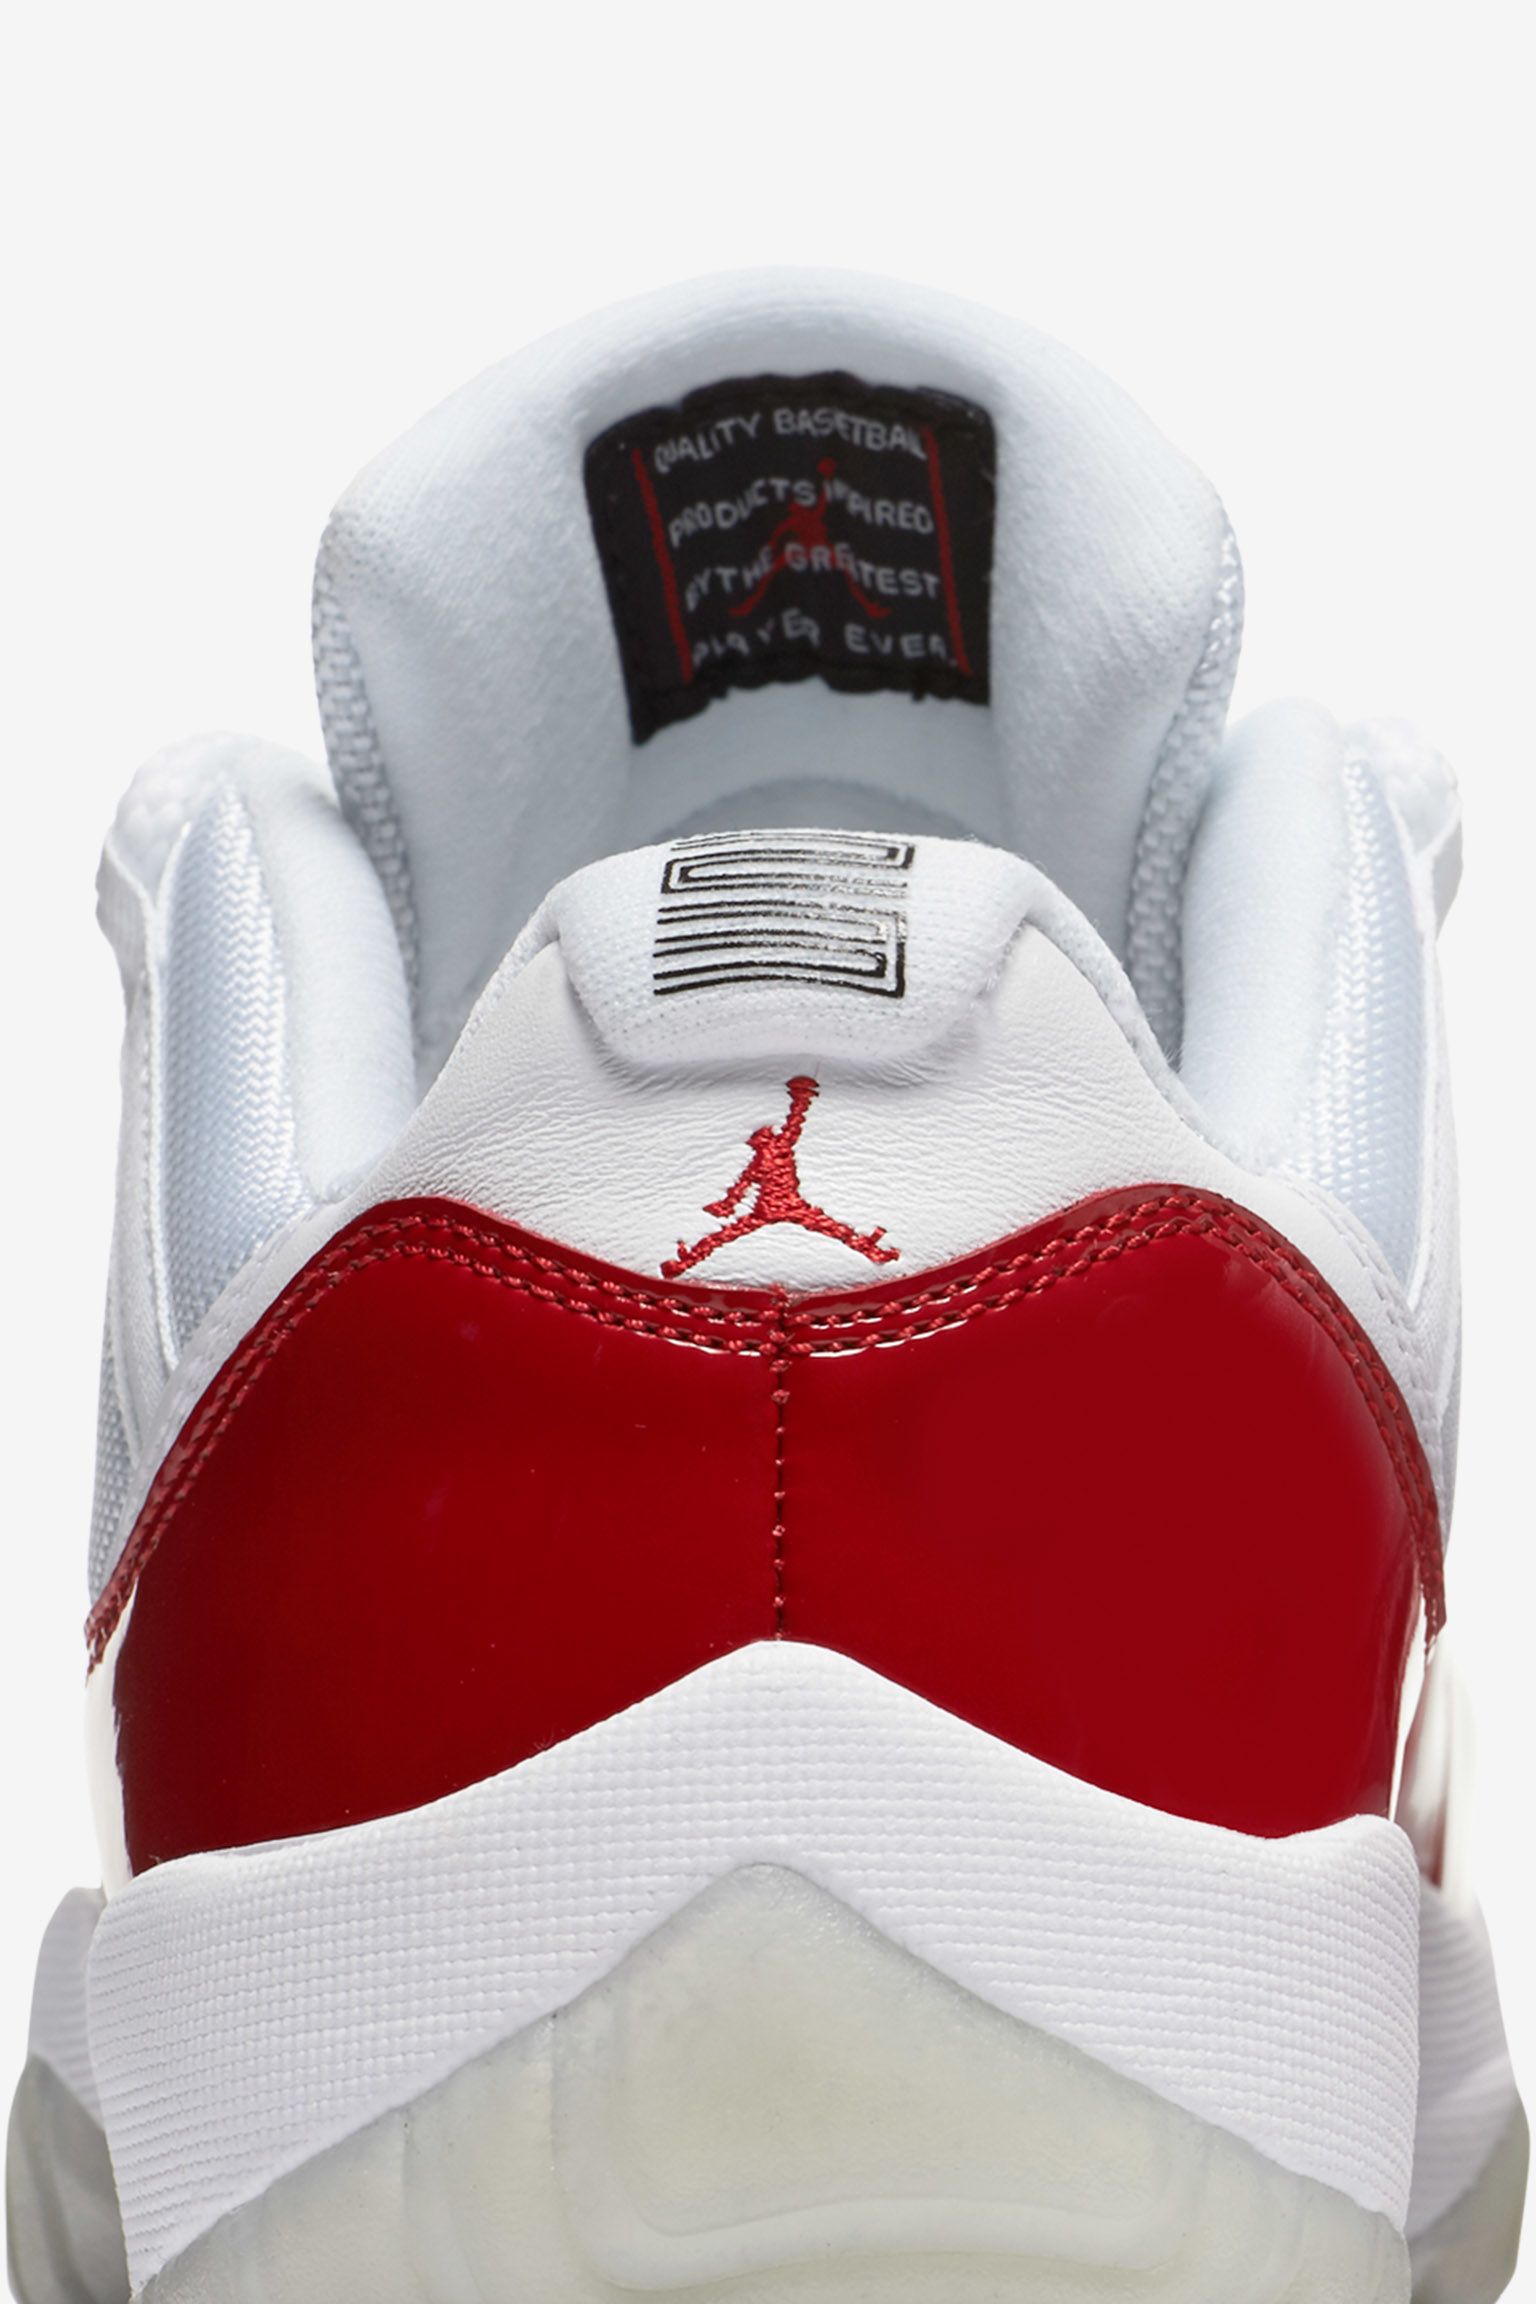 Air Jordan Retro Low 'Varsity Red' Release Date. Nike SNKRS